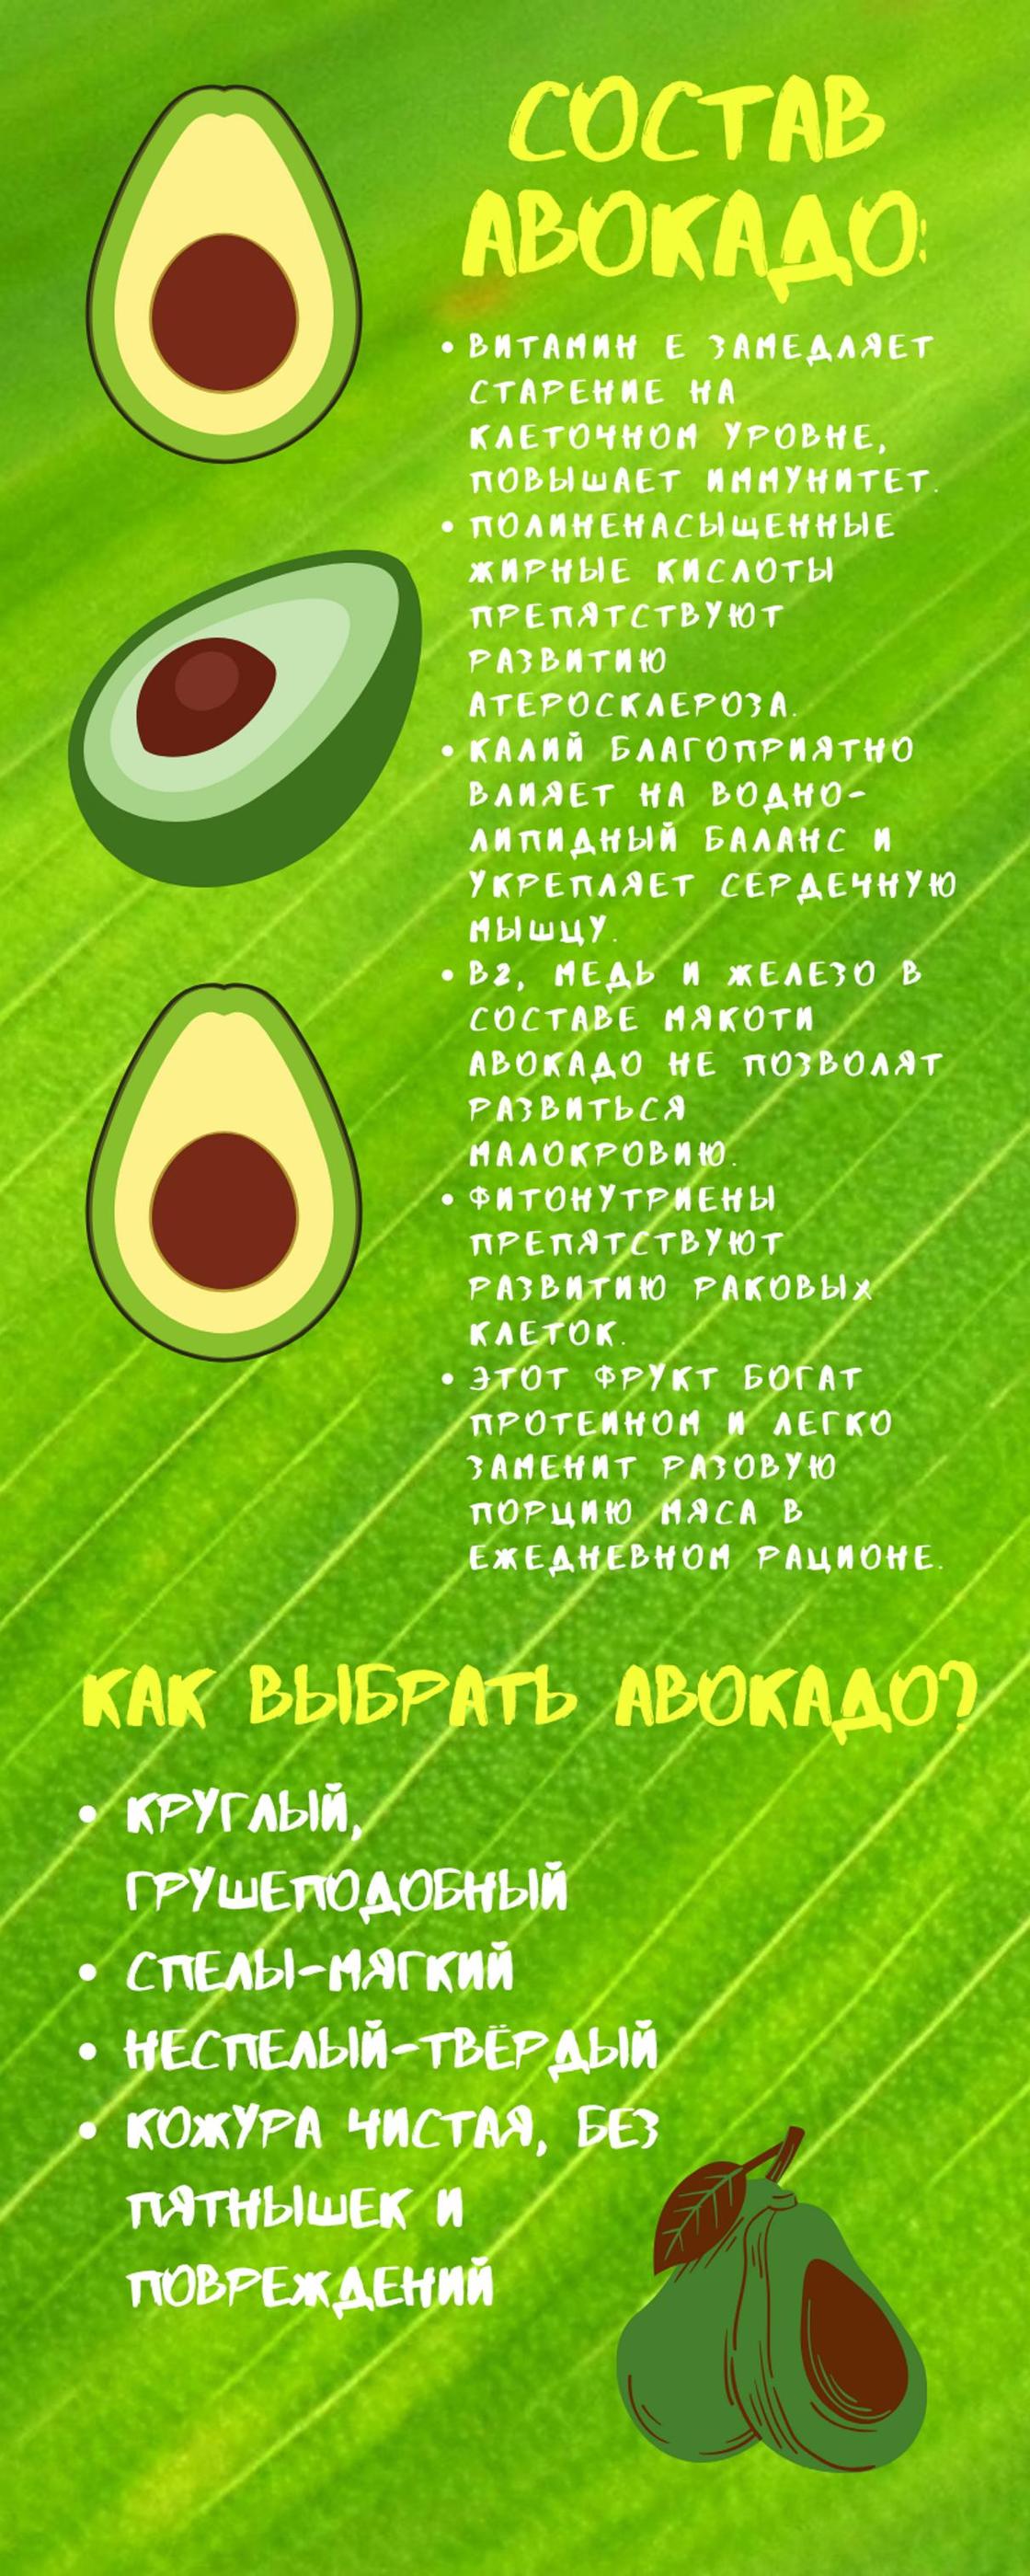 Состав авокадо